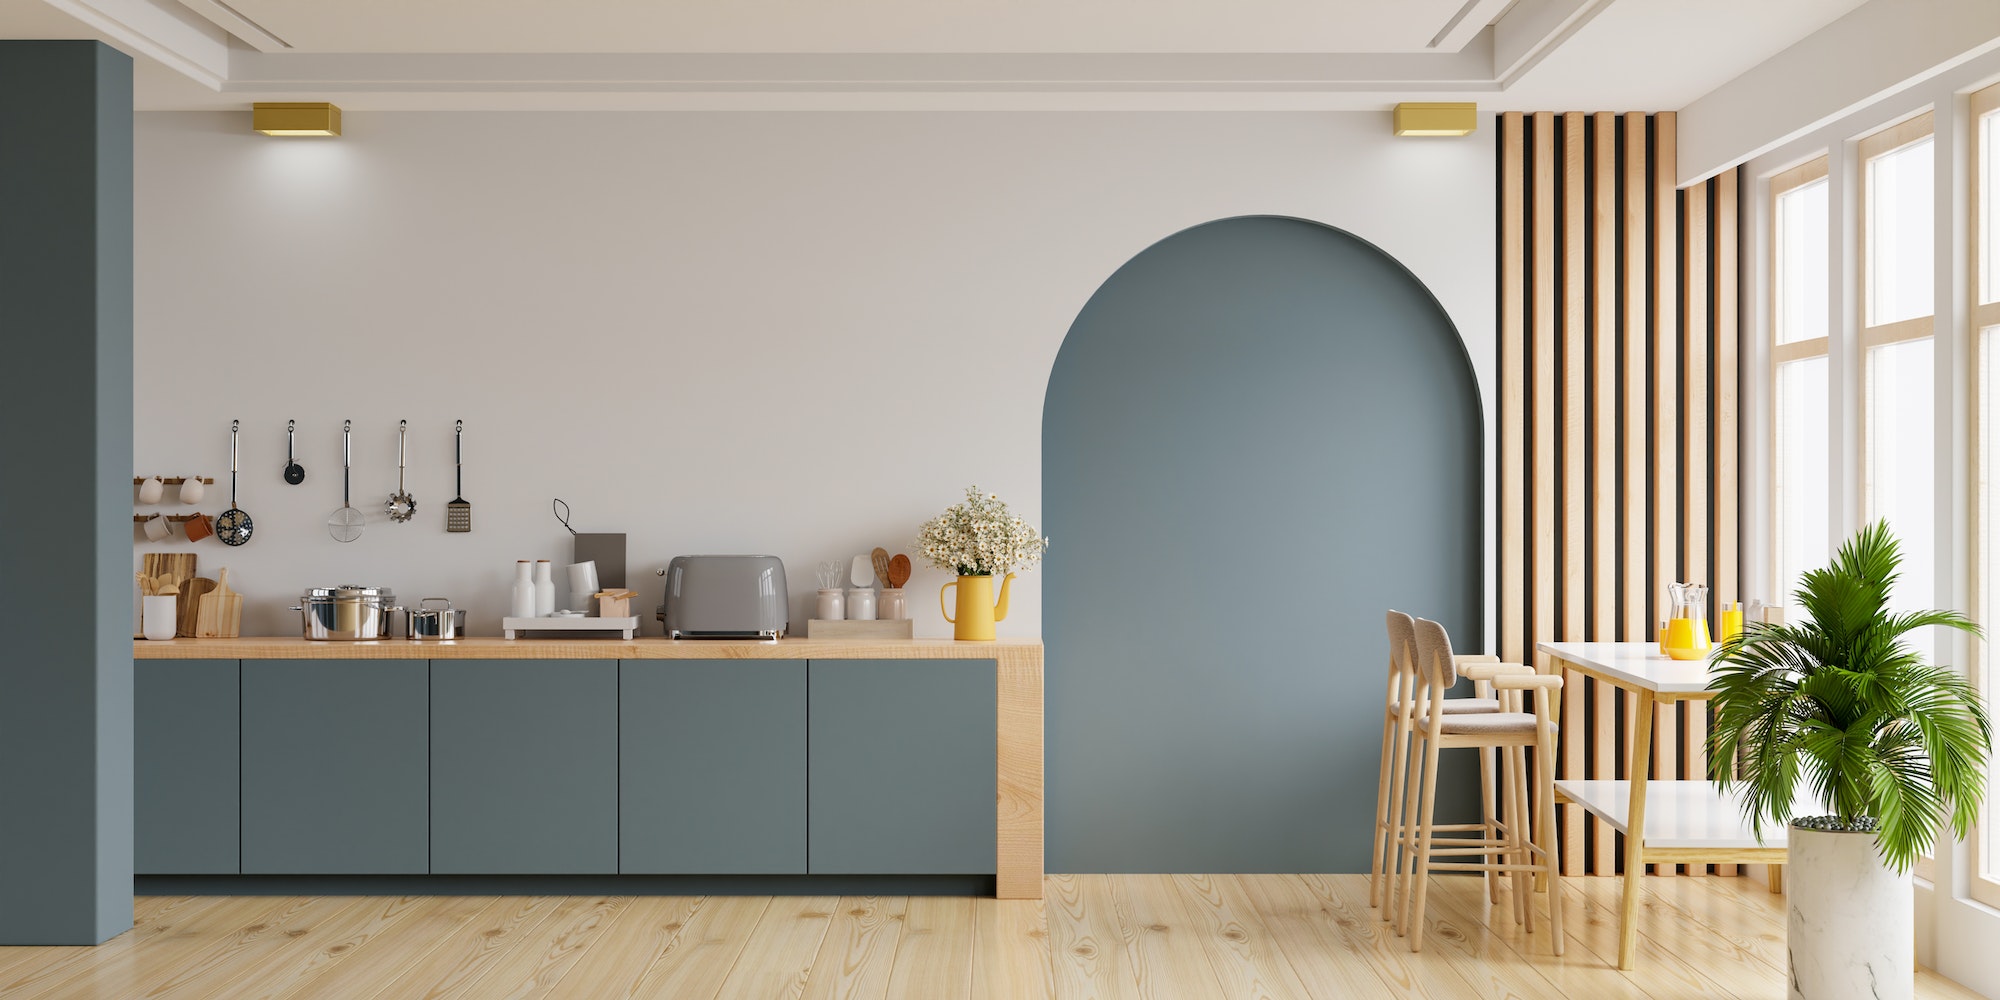 Modern style kitchen interior design with dark blue wall,dining room interior design